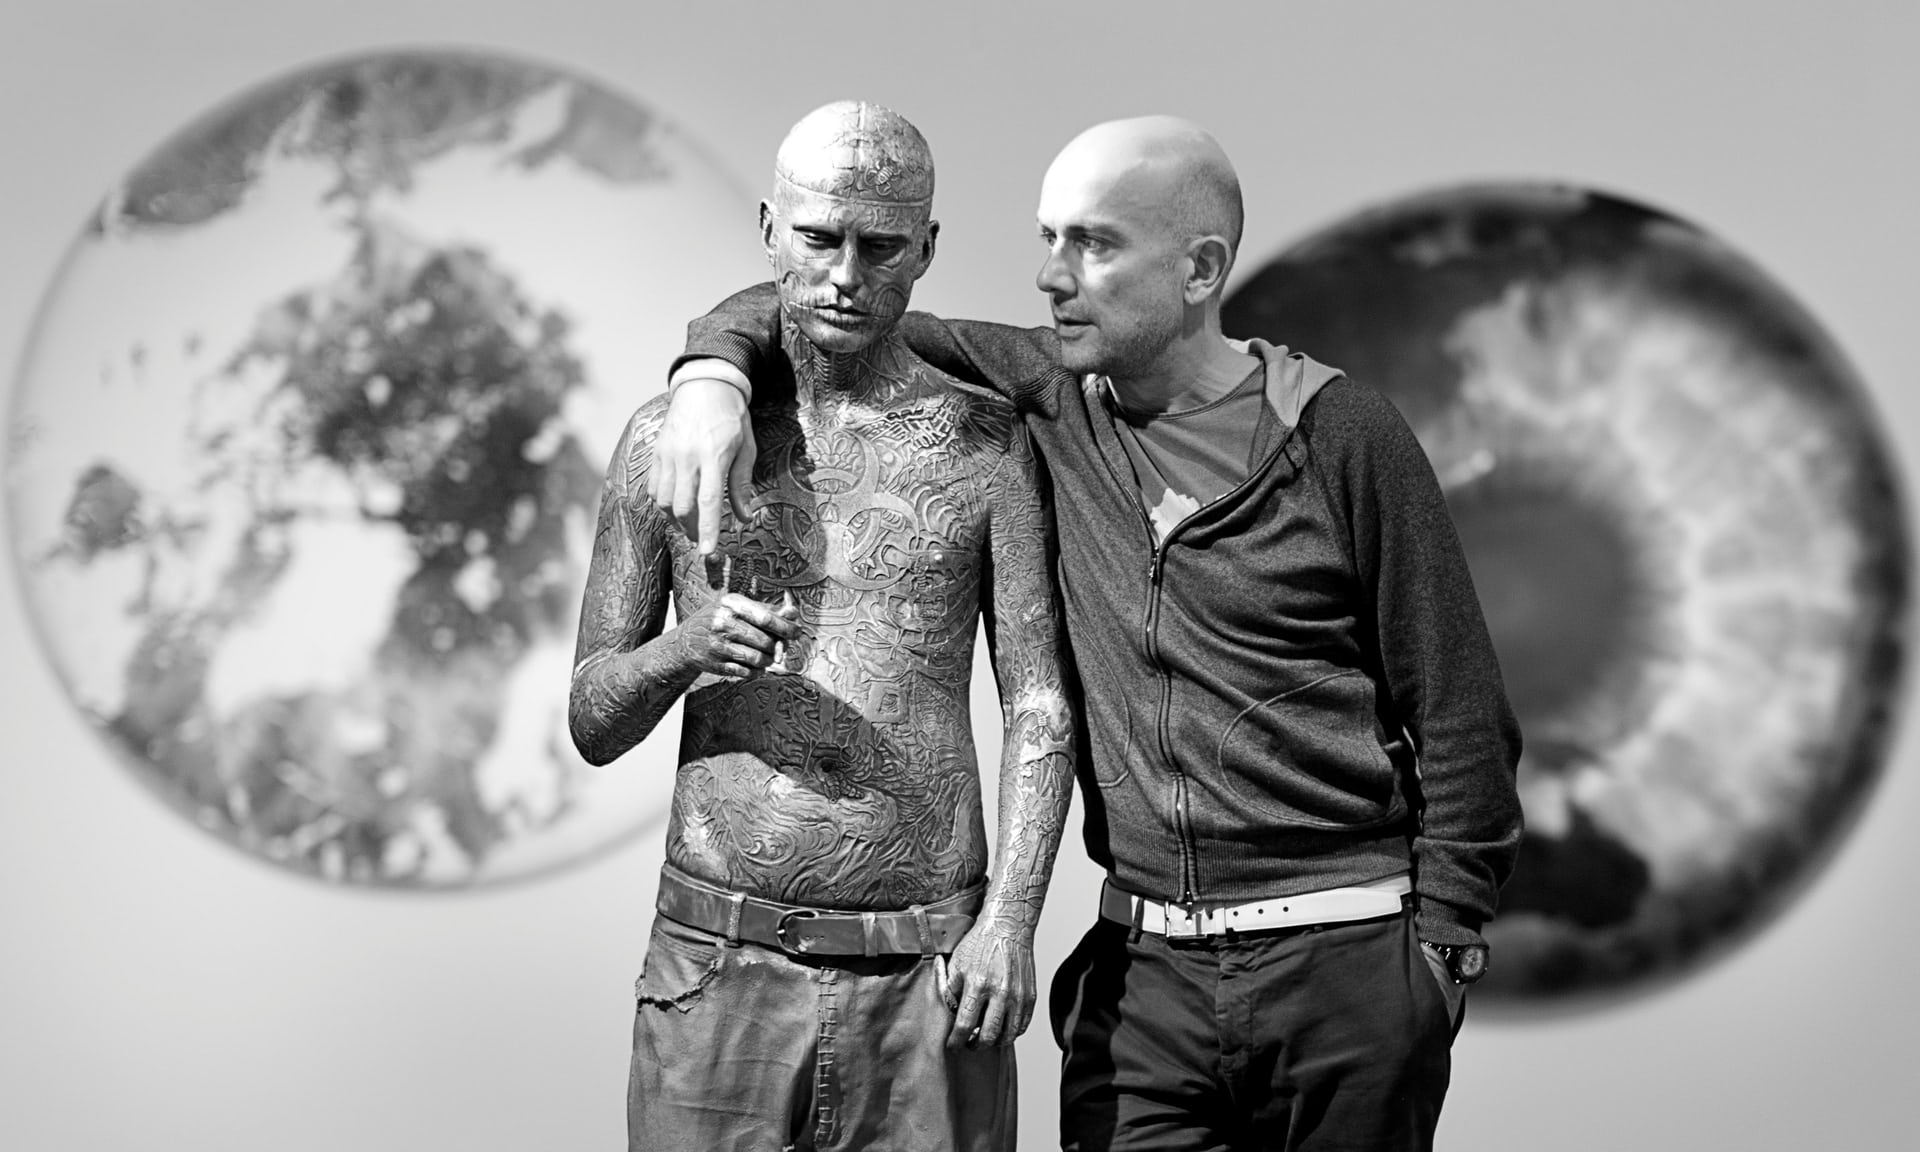 Художник Марк Куинн выставит свою новую работу, скульптуру Зомби Боя, в лондонском музее науки.  - фото 1